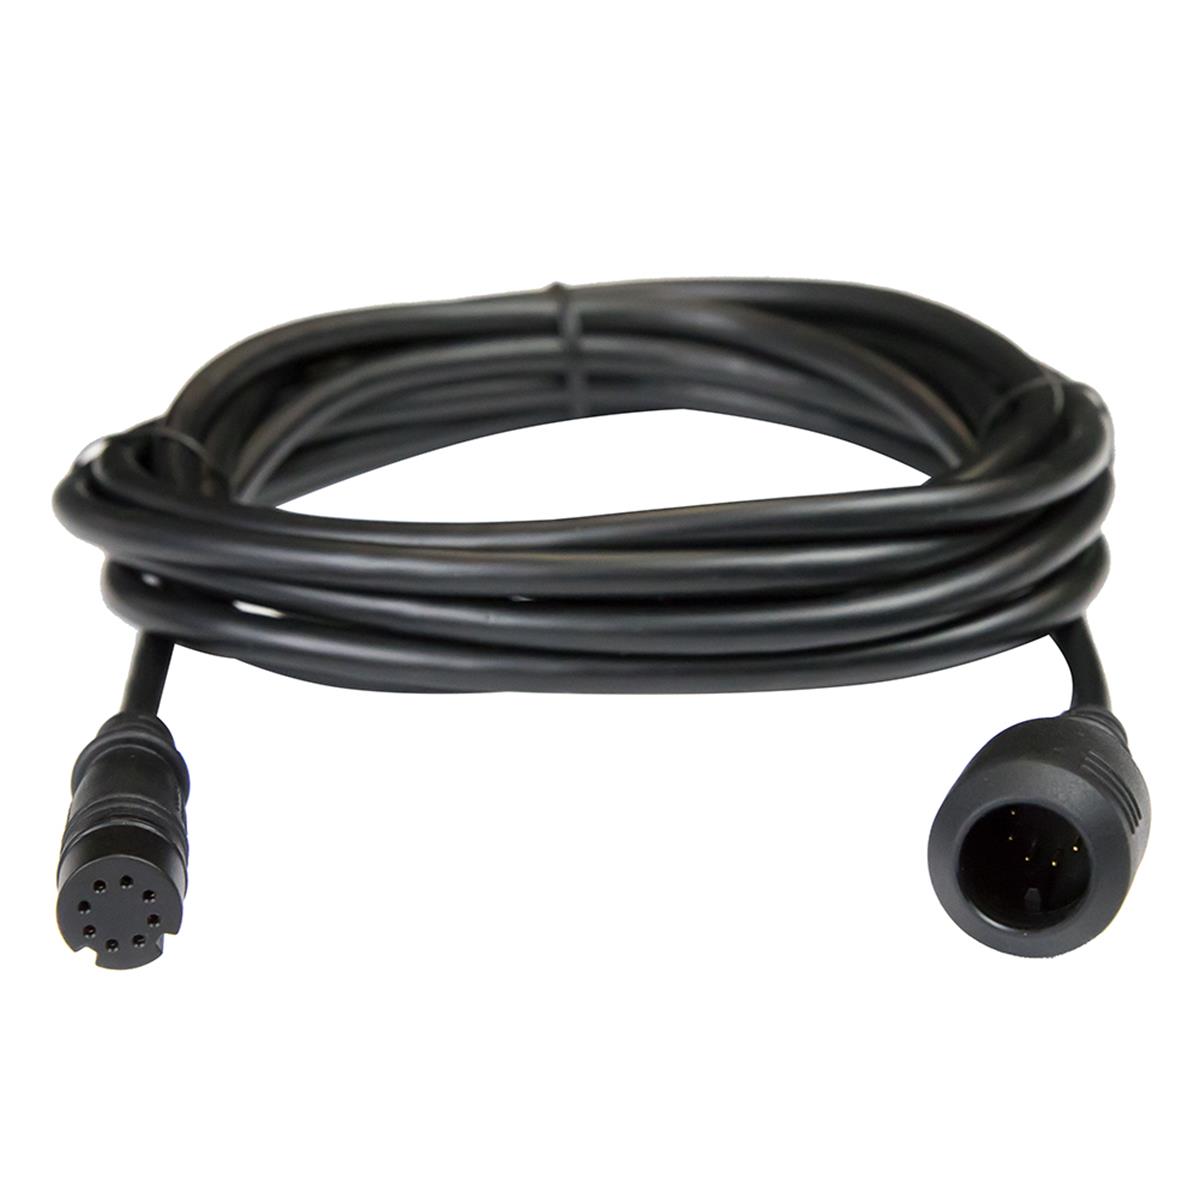 000-14414-001 Extension Cable For Hook Tripleshot & Splitshot Transducer - 10 Ft.